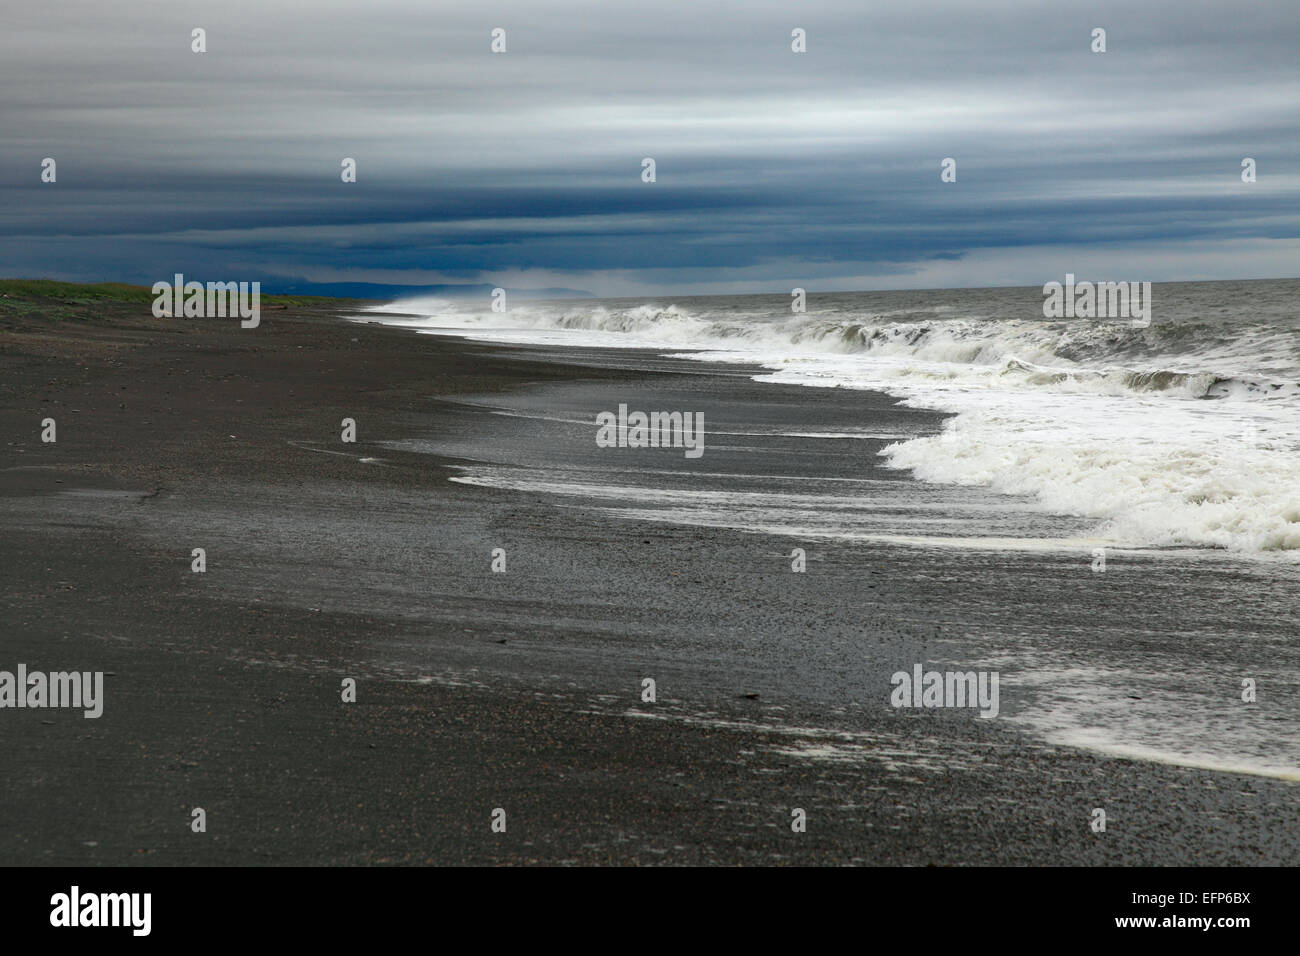 Sea of Okhotsk, Kamchatka Peninsula, Russia Stock Photo